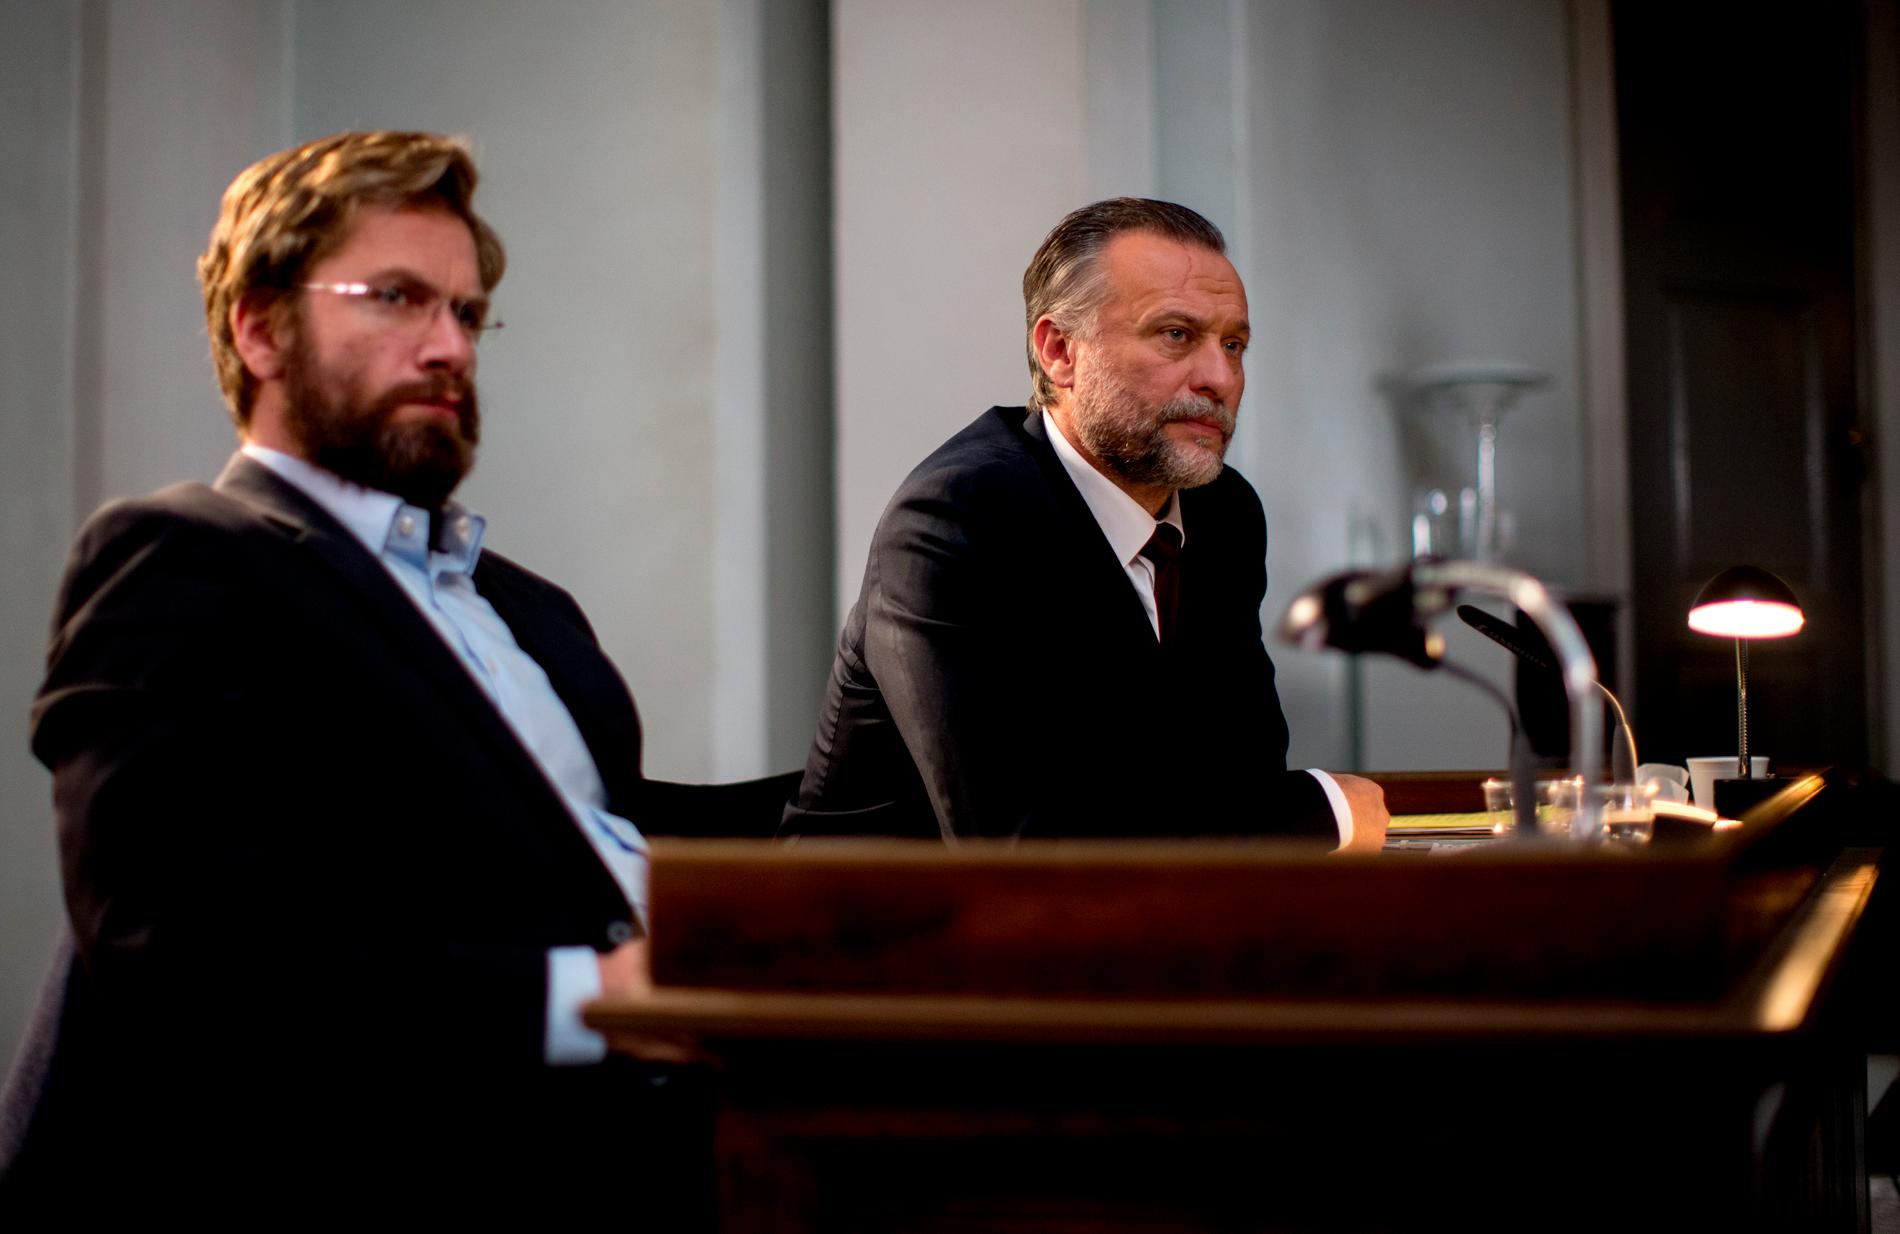 Skådespelarna Nikolaj Lie Kaas och Michael Nyqvist spelar två av rollerna i den danska filmen "Du försvinner" som spelas in hos Film i Väst i Trollhättan. Filmen baseras på en bok av den danske författaren Christian Jungersen.